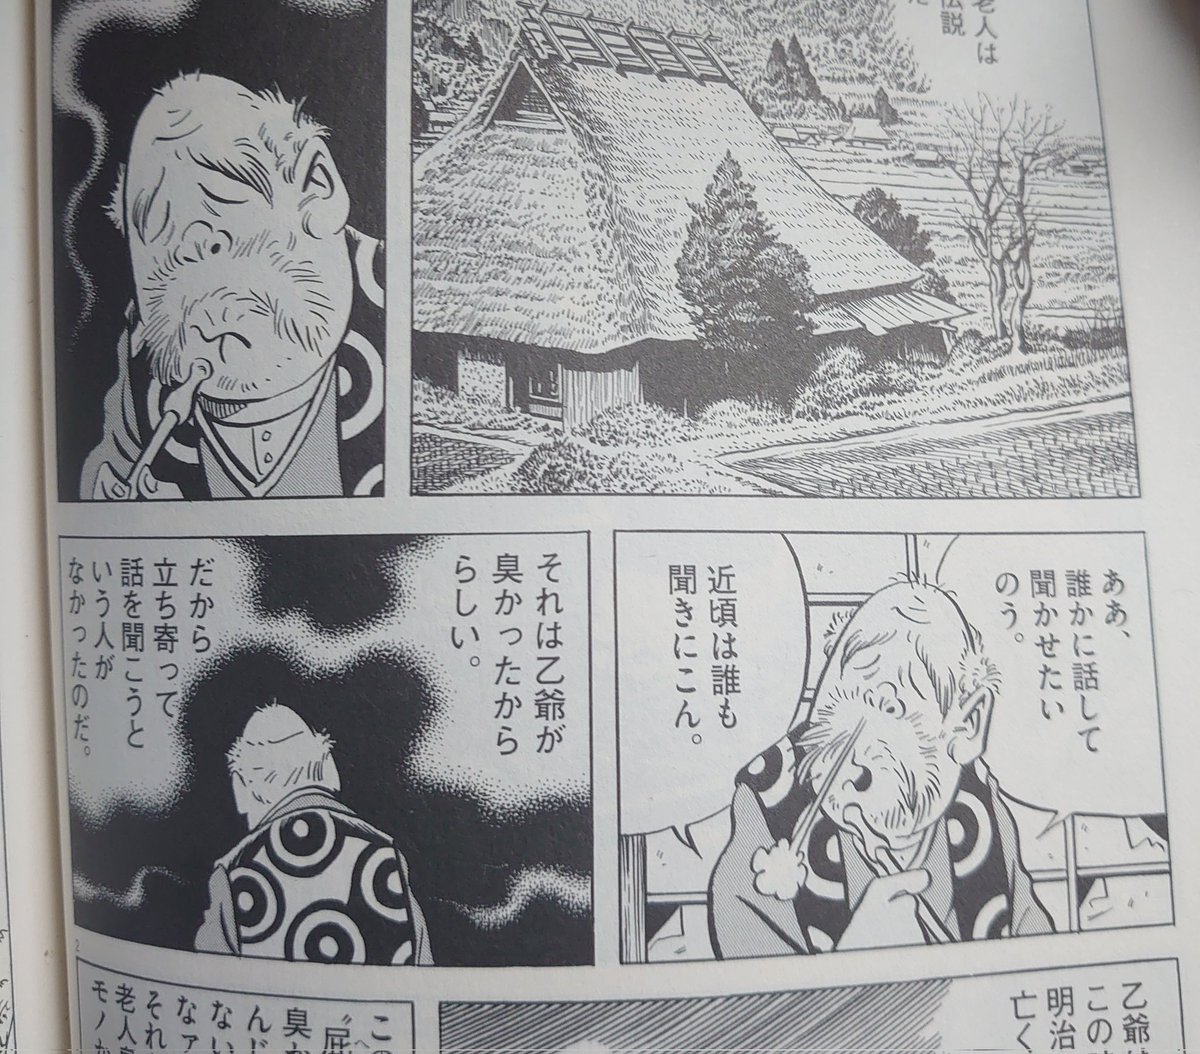 何年も水木しげるの遠野物語読んでてさっき初めて気づいたんだけど、このページの新田乙蔵さんの背中ってもしかしてベタ塗り忘れてる??? 